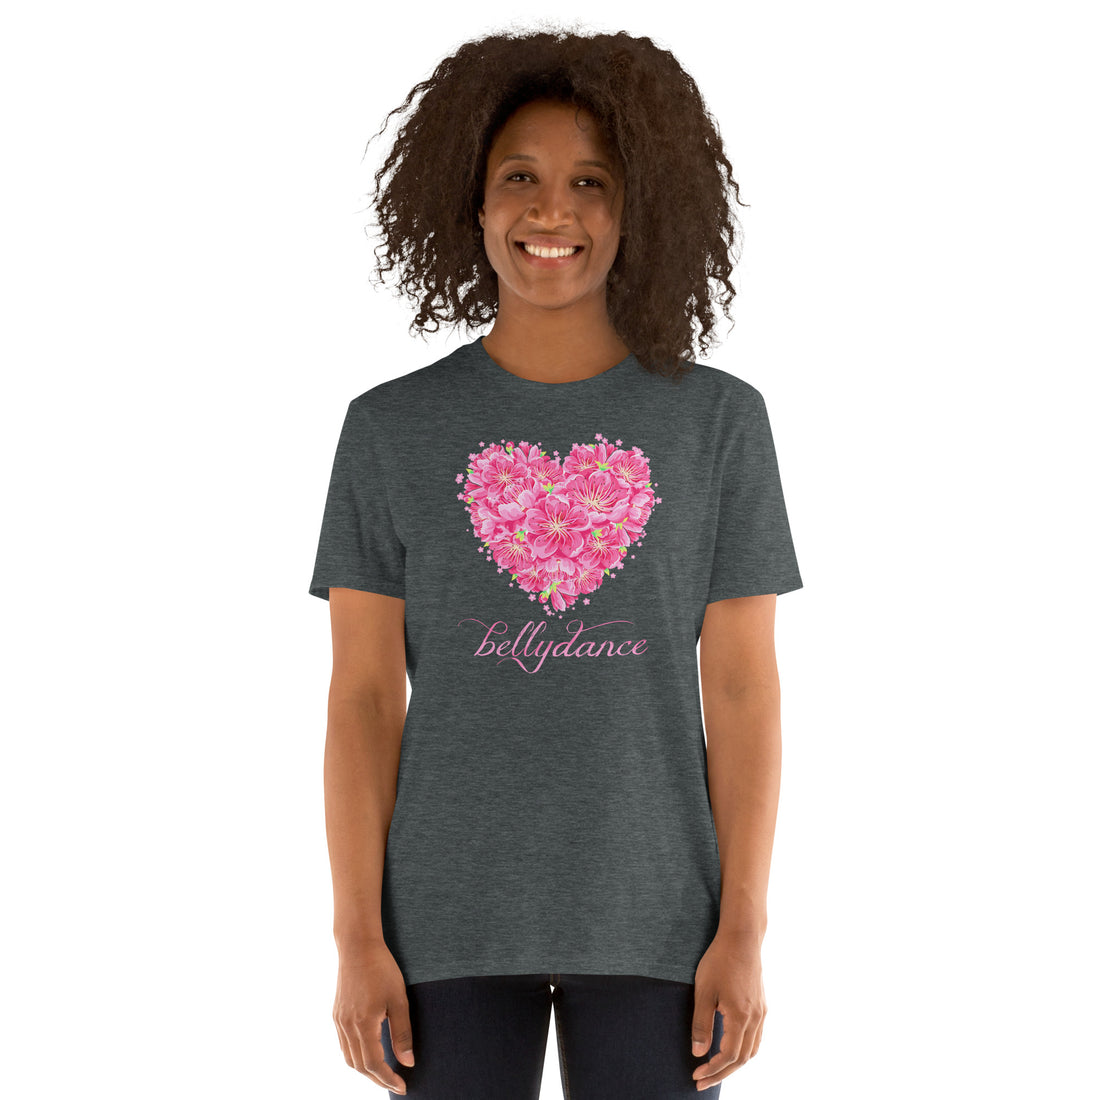 Flower Heart Belly Dance T-Shirt - gift for a dance lover, dancer, bellydancer - soft 100% cotton